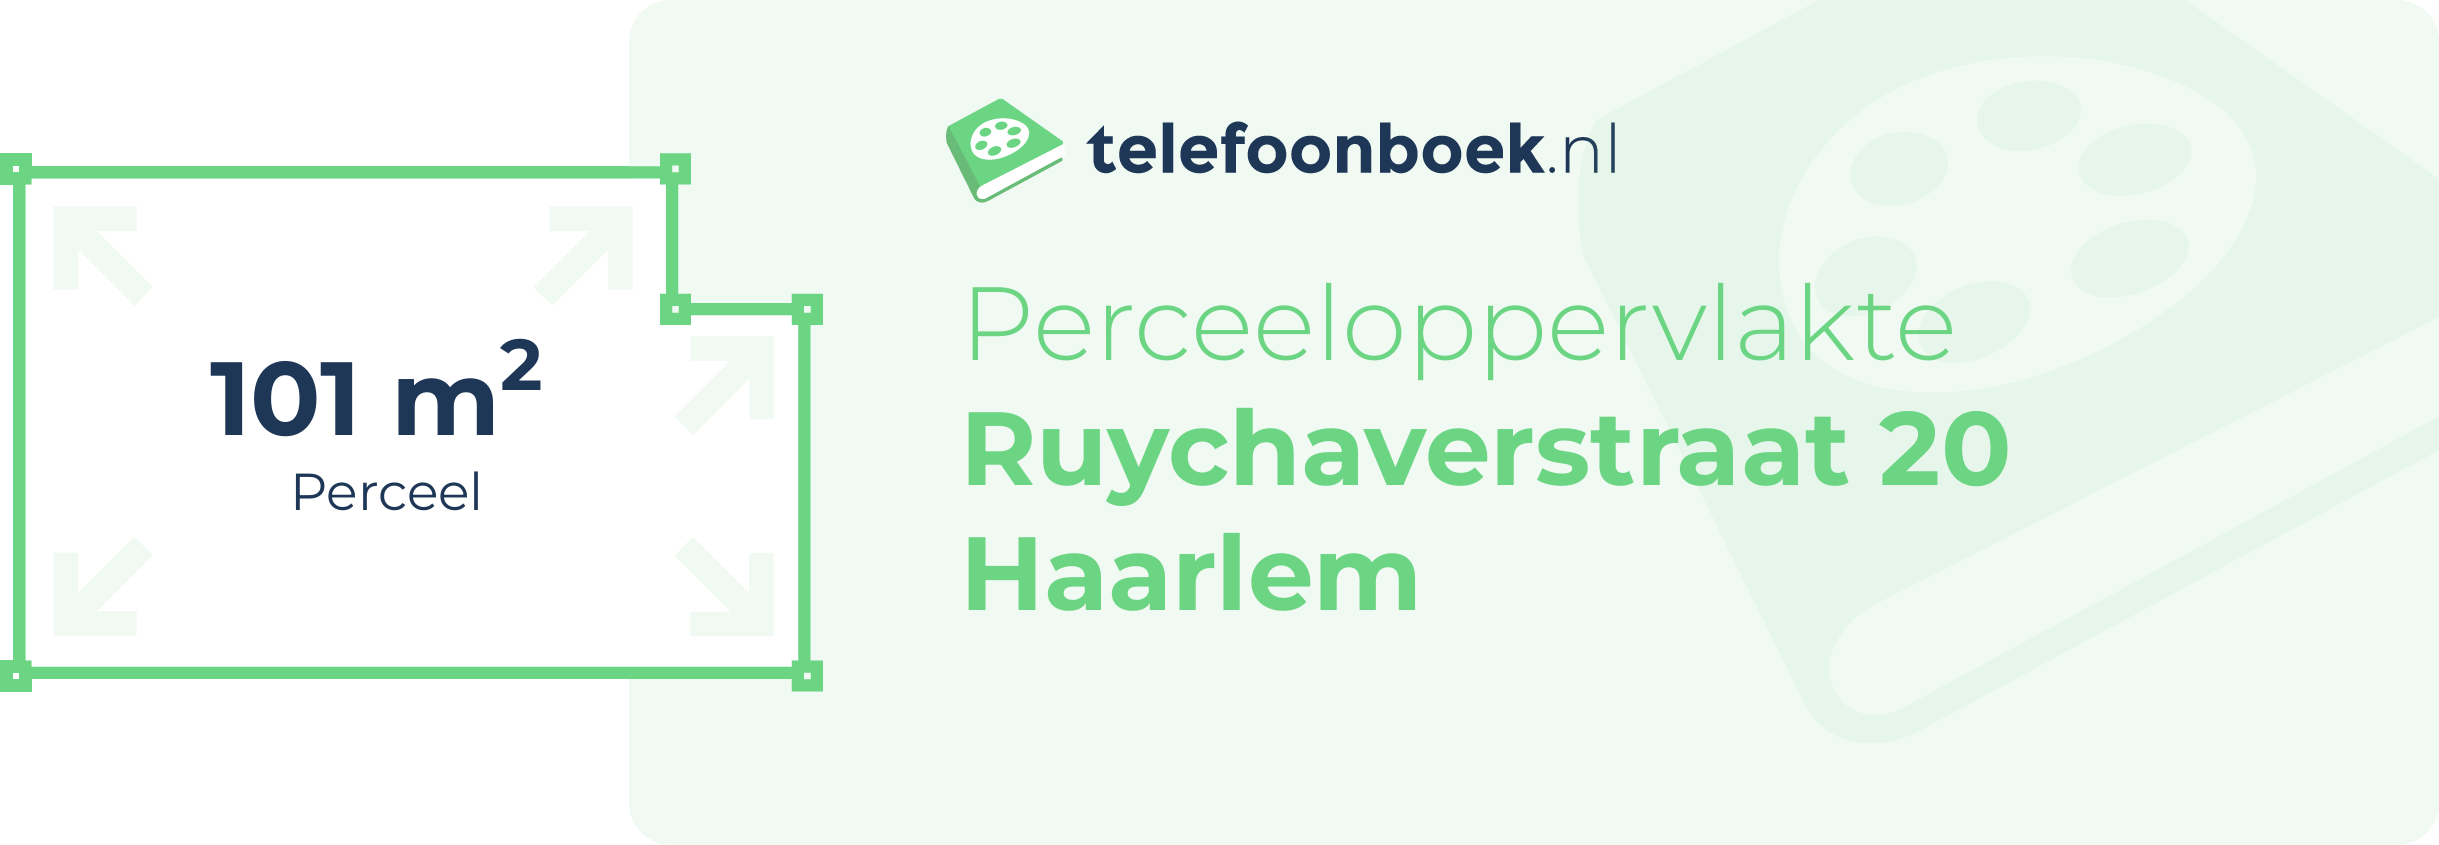 Perceeloppervlakte Ruychaverstraat 20 Haarlem